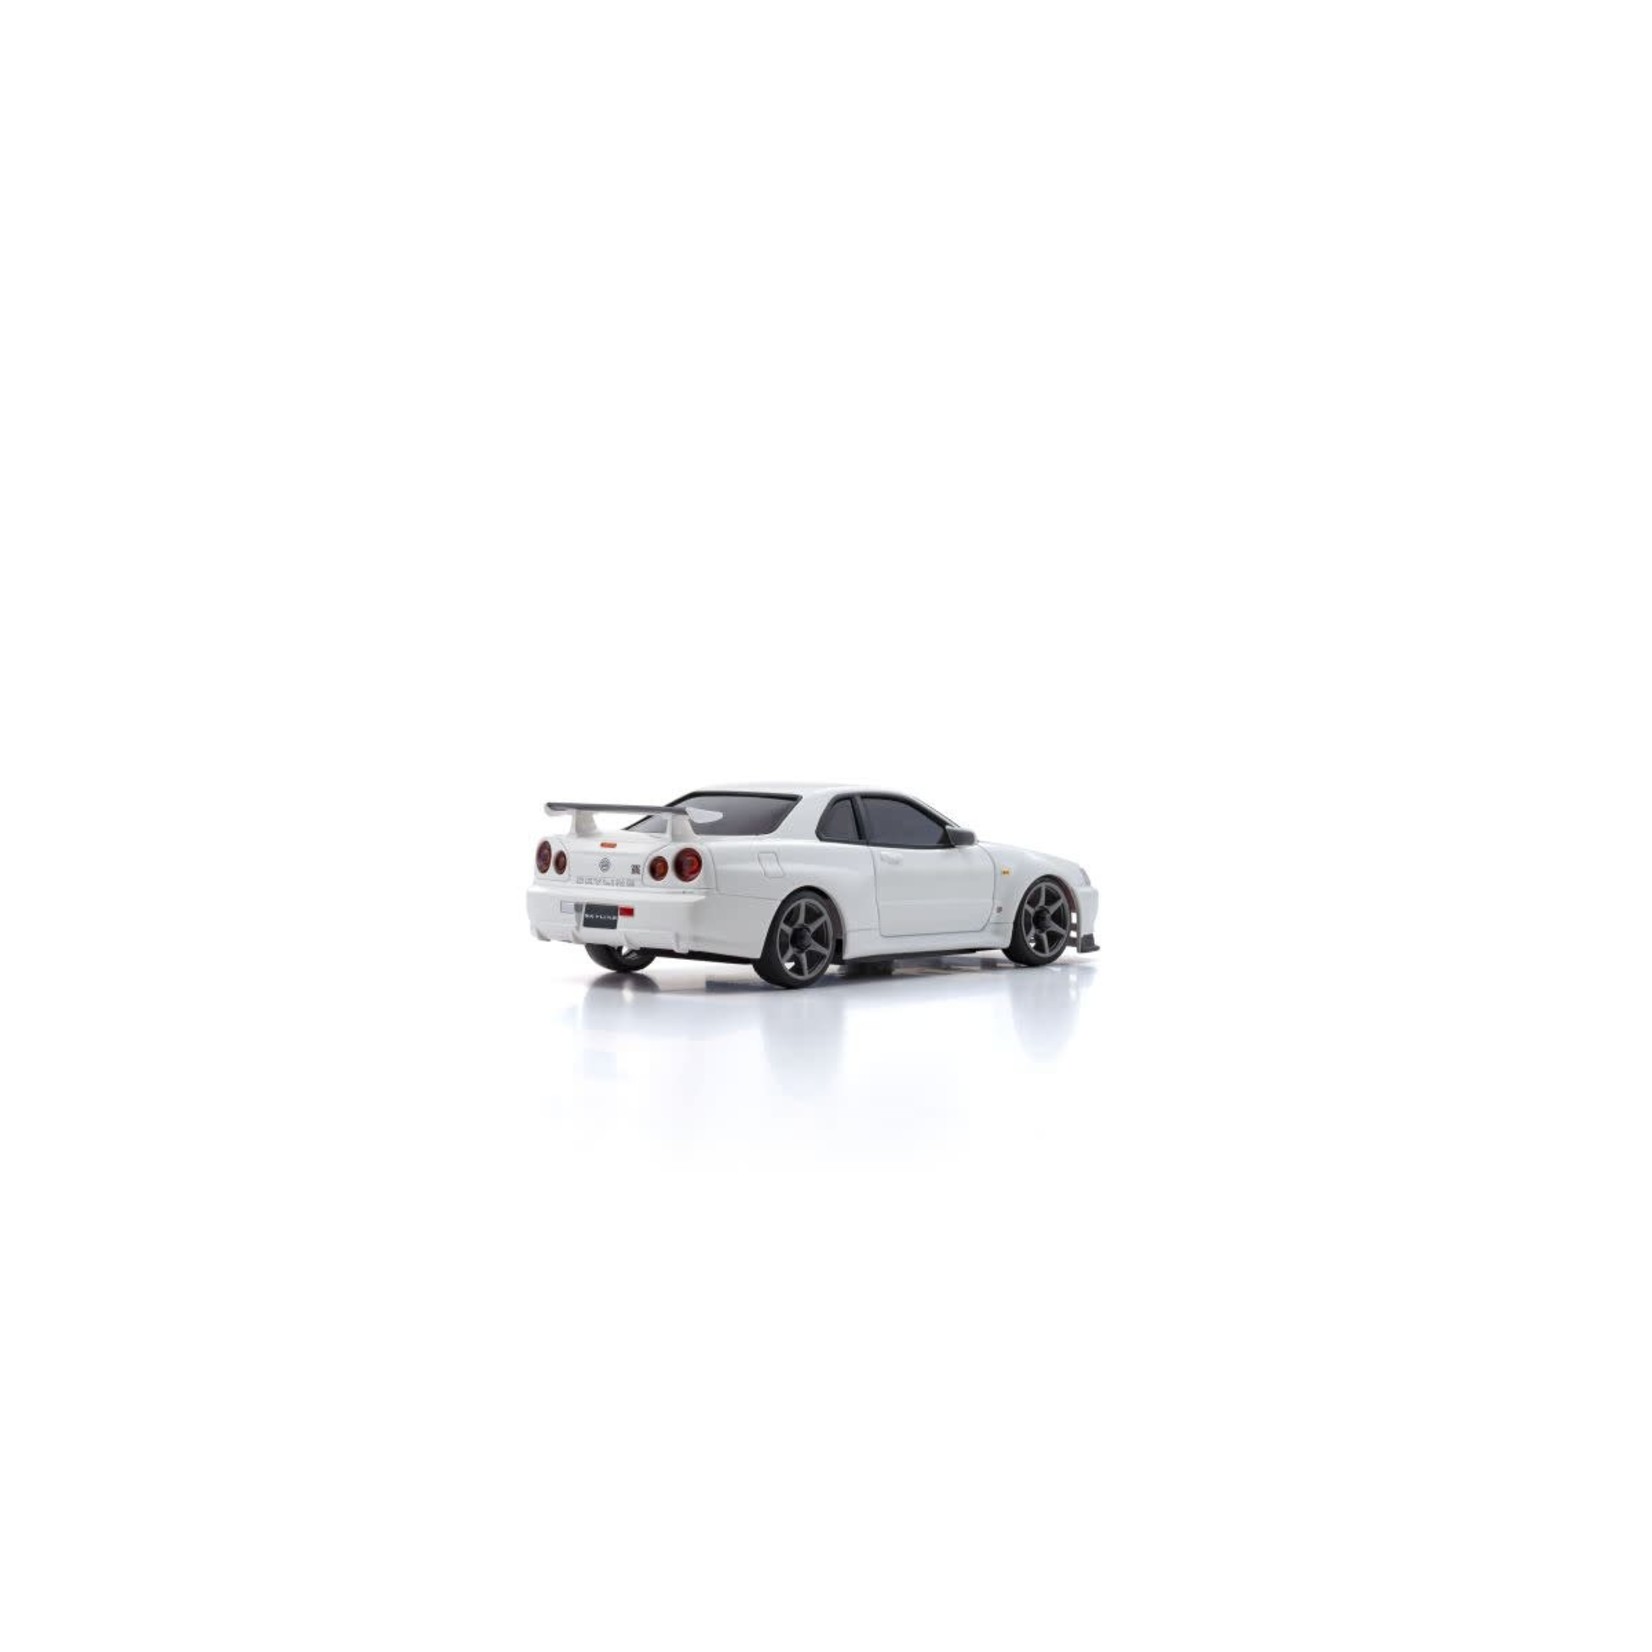 Kyosho Kyosho MINI-Z AWD MA-020 Series ReadySet Nissan Skyline GT-R R34 V.spec II Nur (White) #32629W